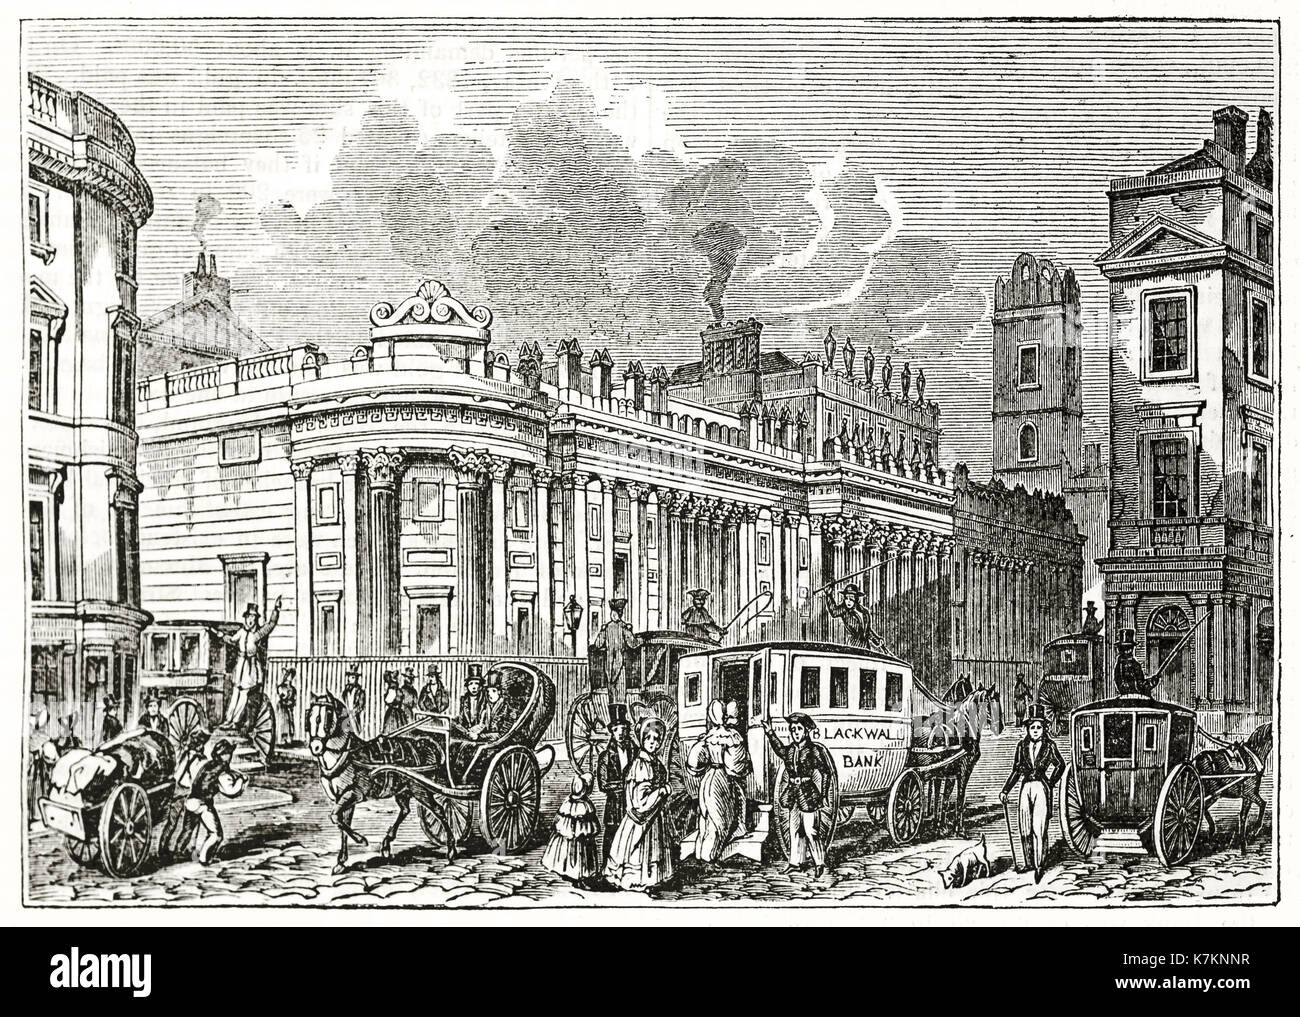 Vecchio vista della Bank of England, Londra. Da autore non identificato, publ. su Penny Magazine, London, 1837 Foto Stock